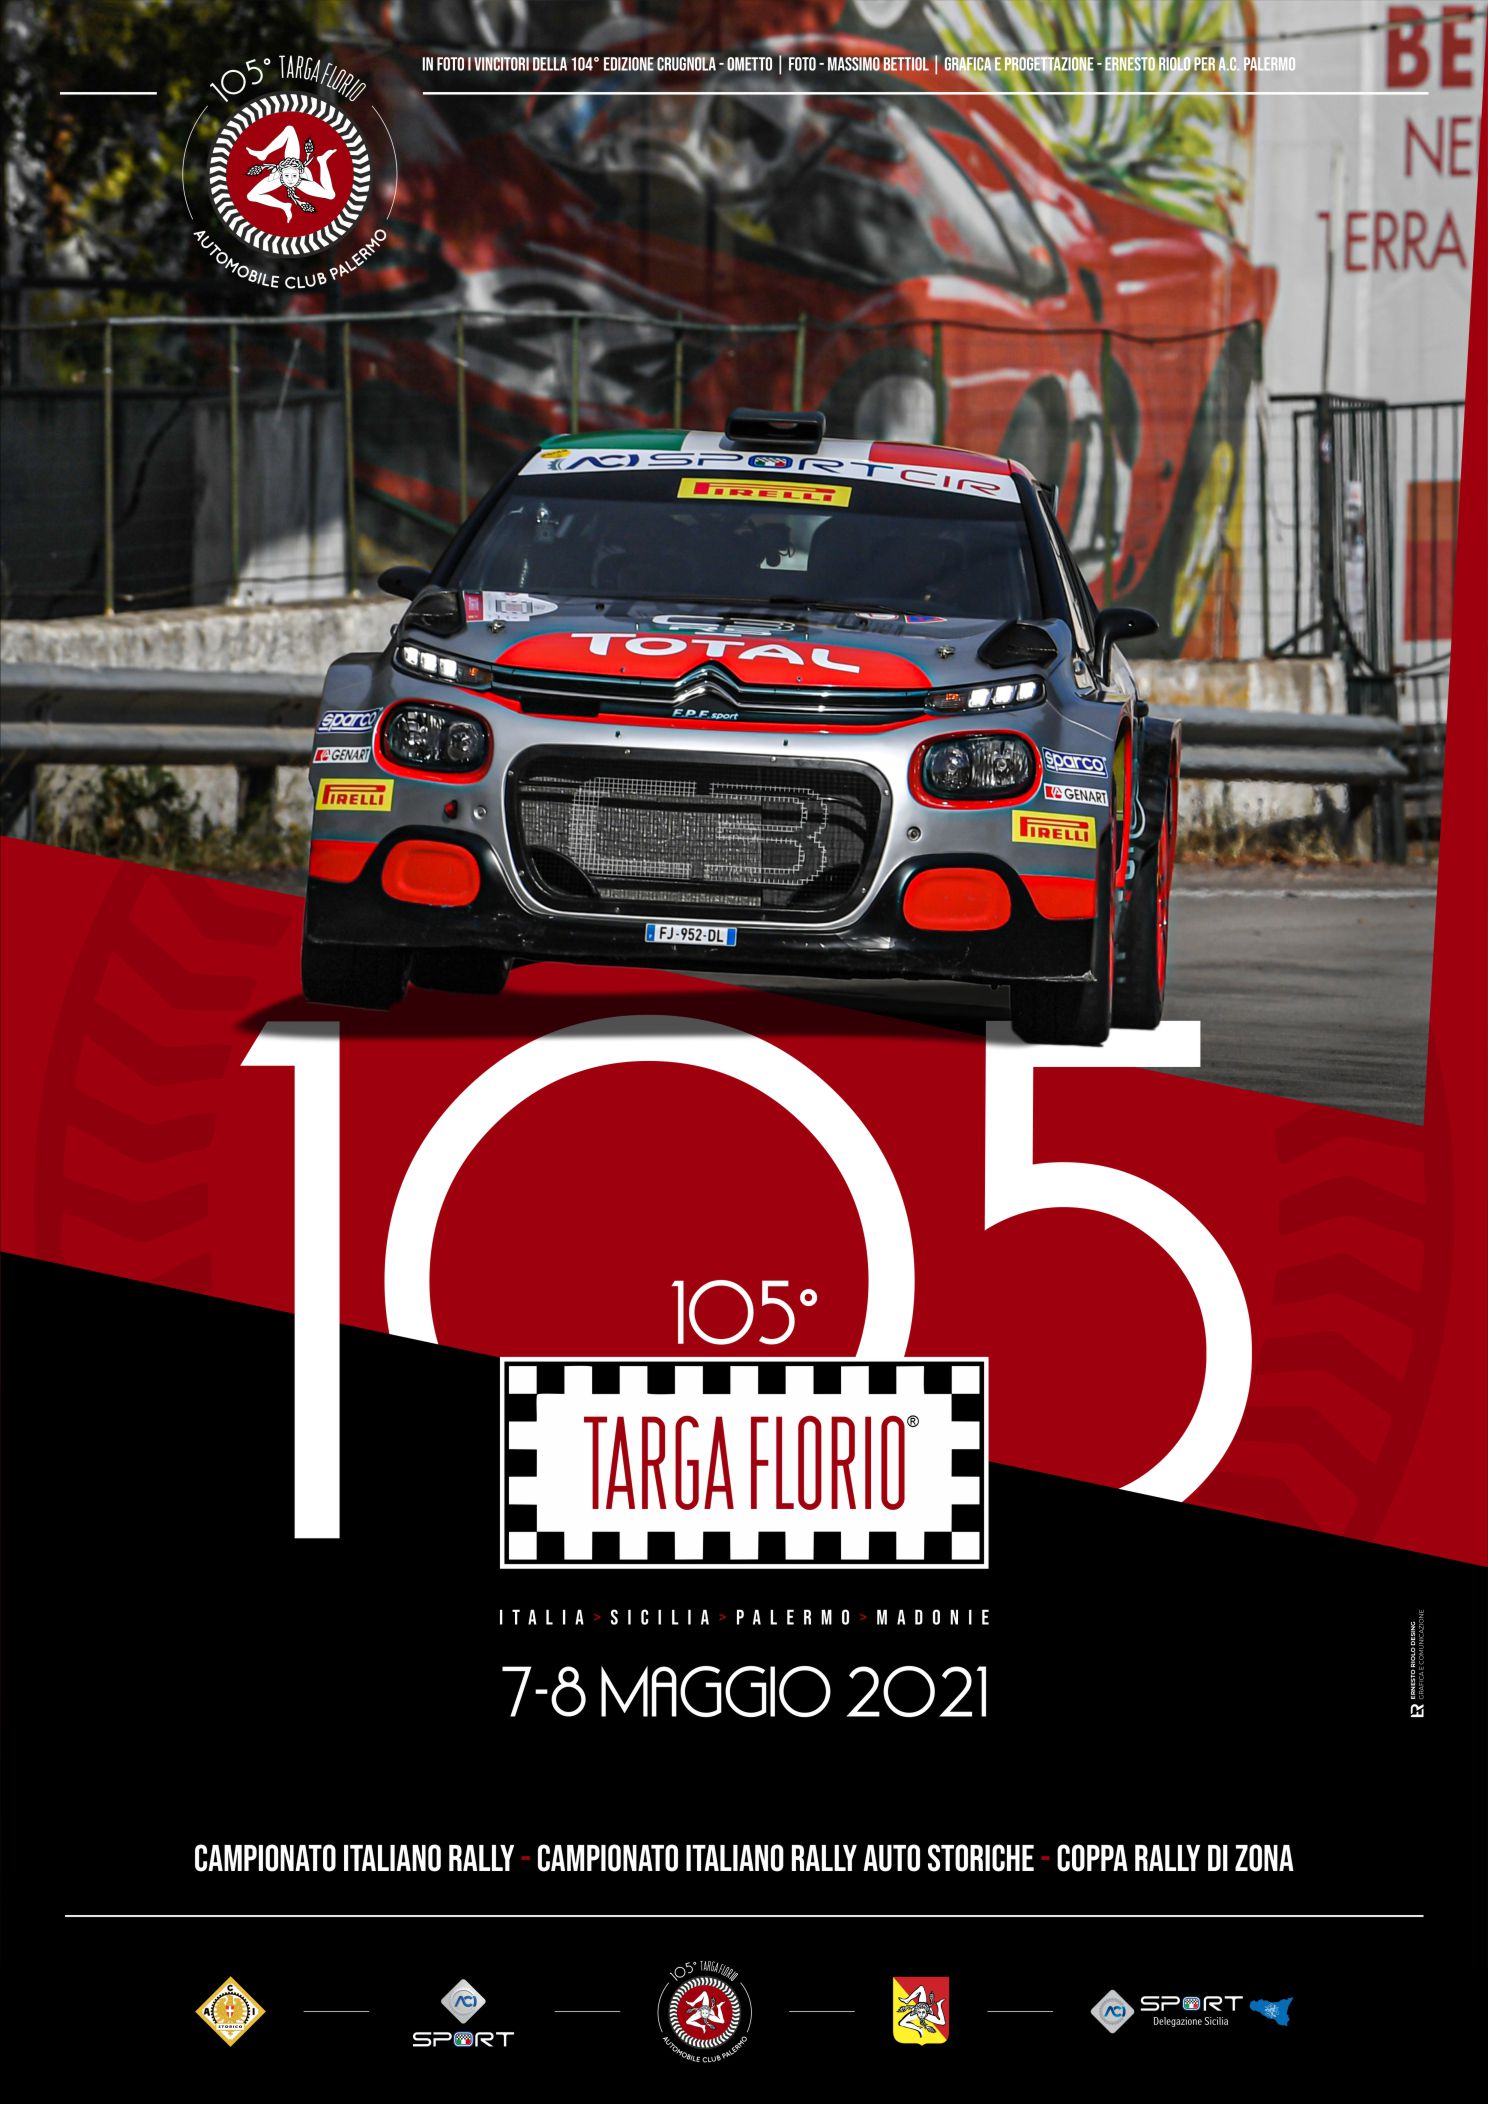 Targa Florio 2021 Cefalu e Madonie Locandina manifestazione edizione 105